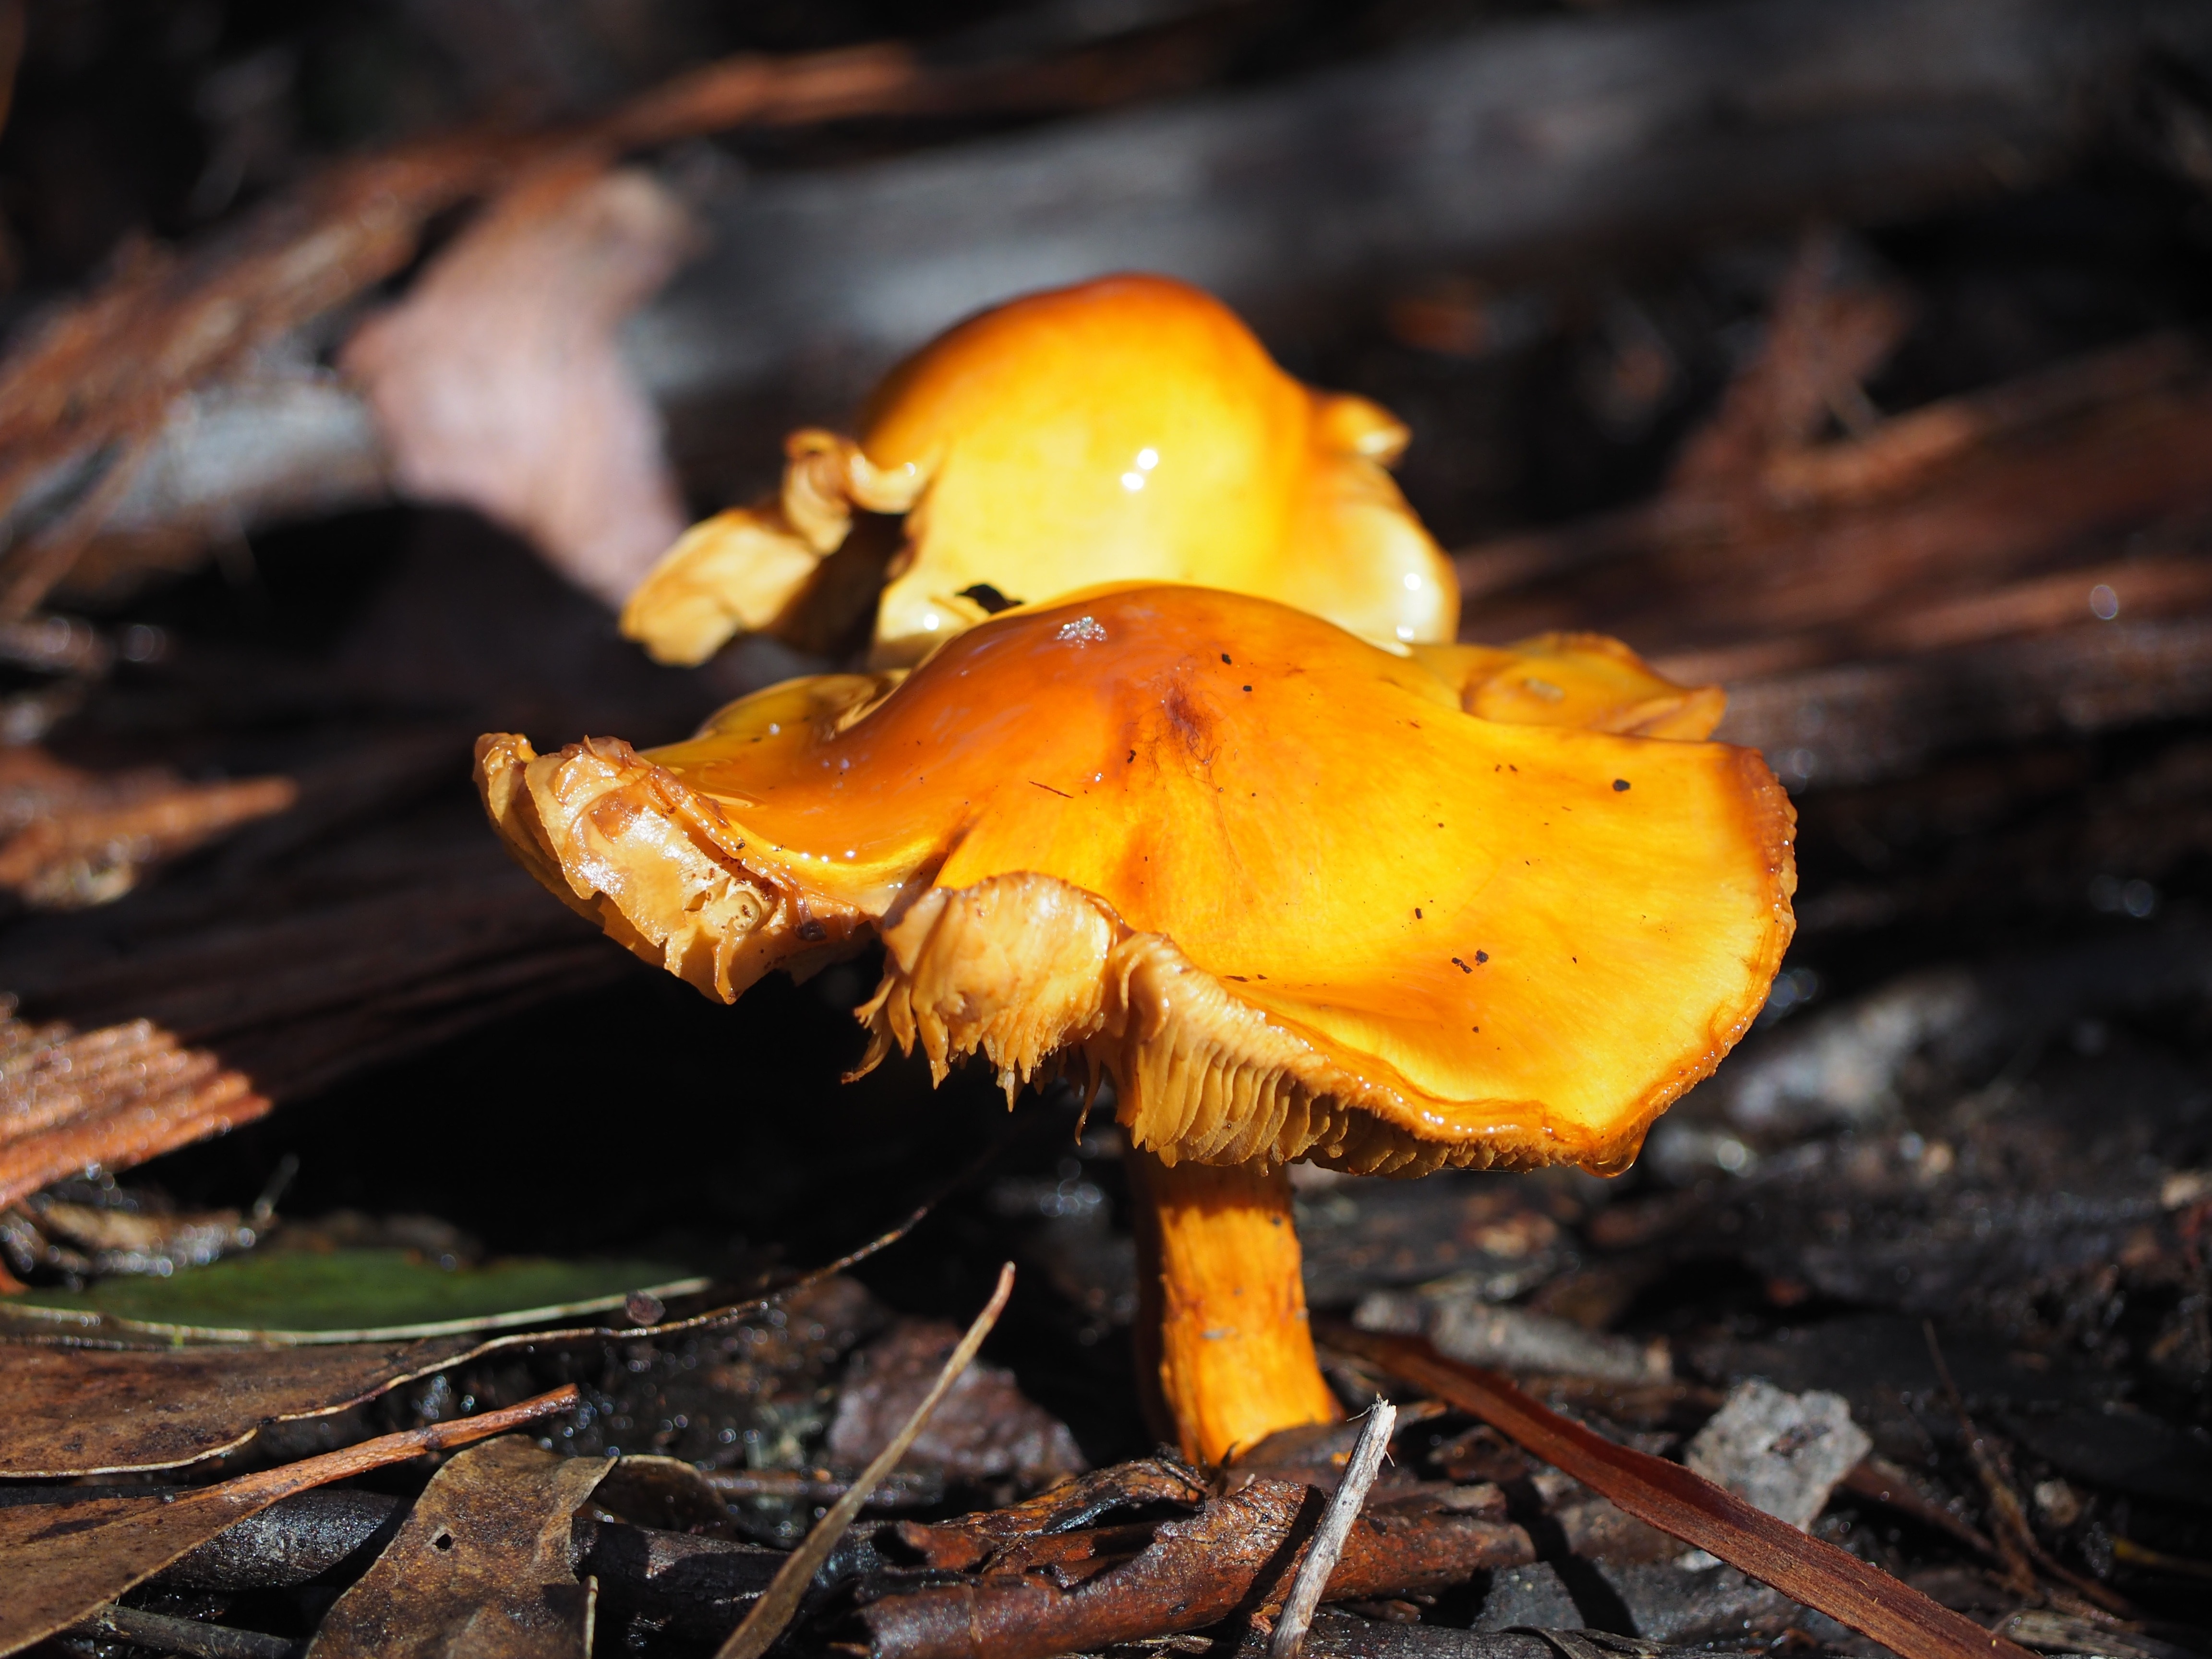 Оранжевые грибы съедобные фото и их названия